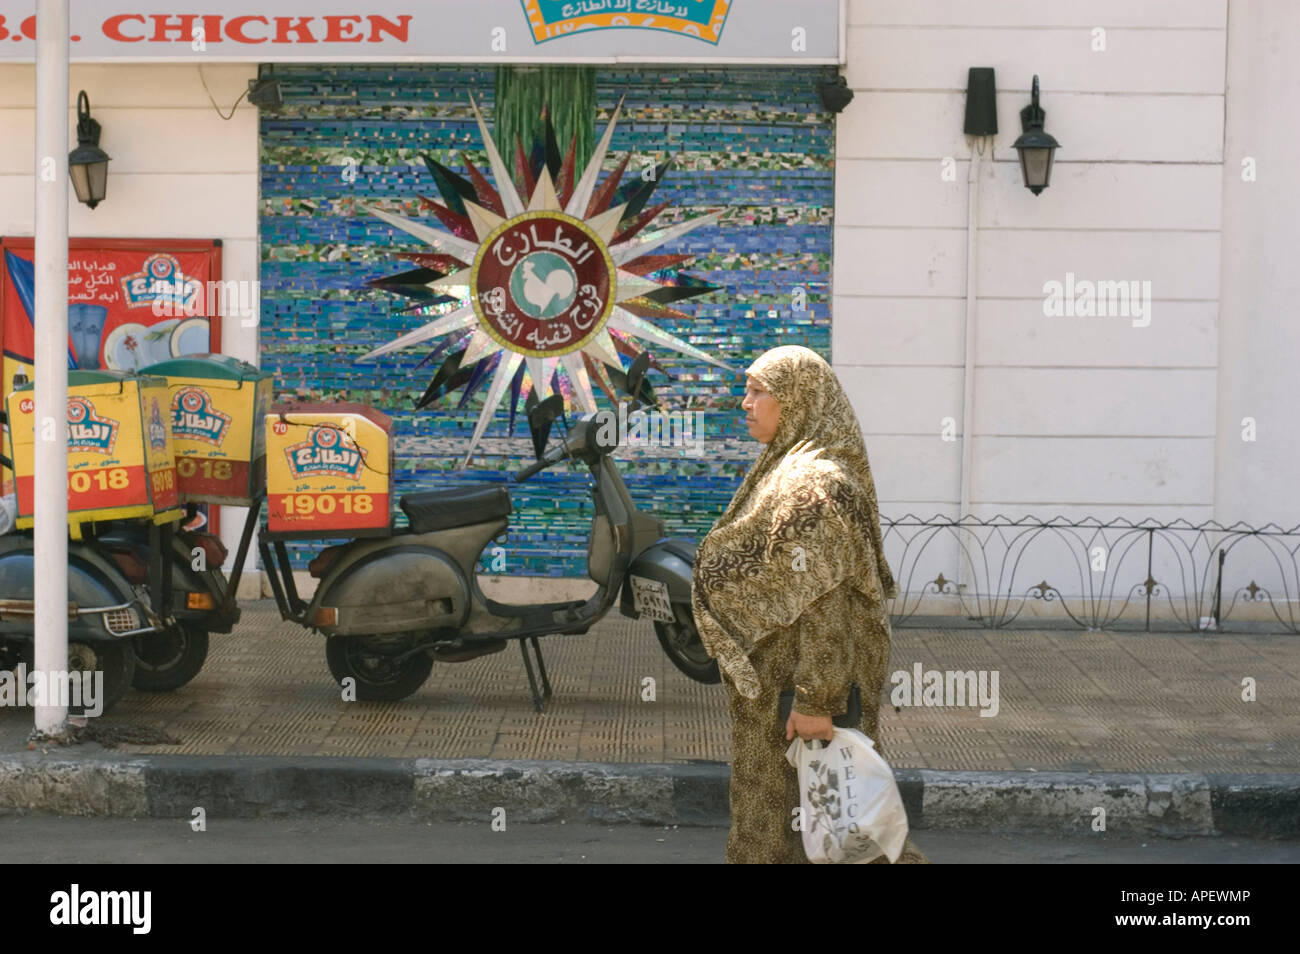 Donna con la copertura del capo e shopping bag passeggiate su Alessandria d Egitto Street di fronte a un ristorante fast food Foto Stock